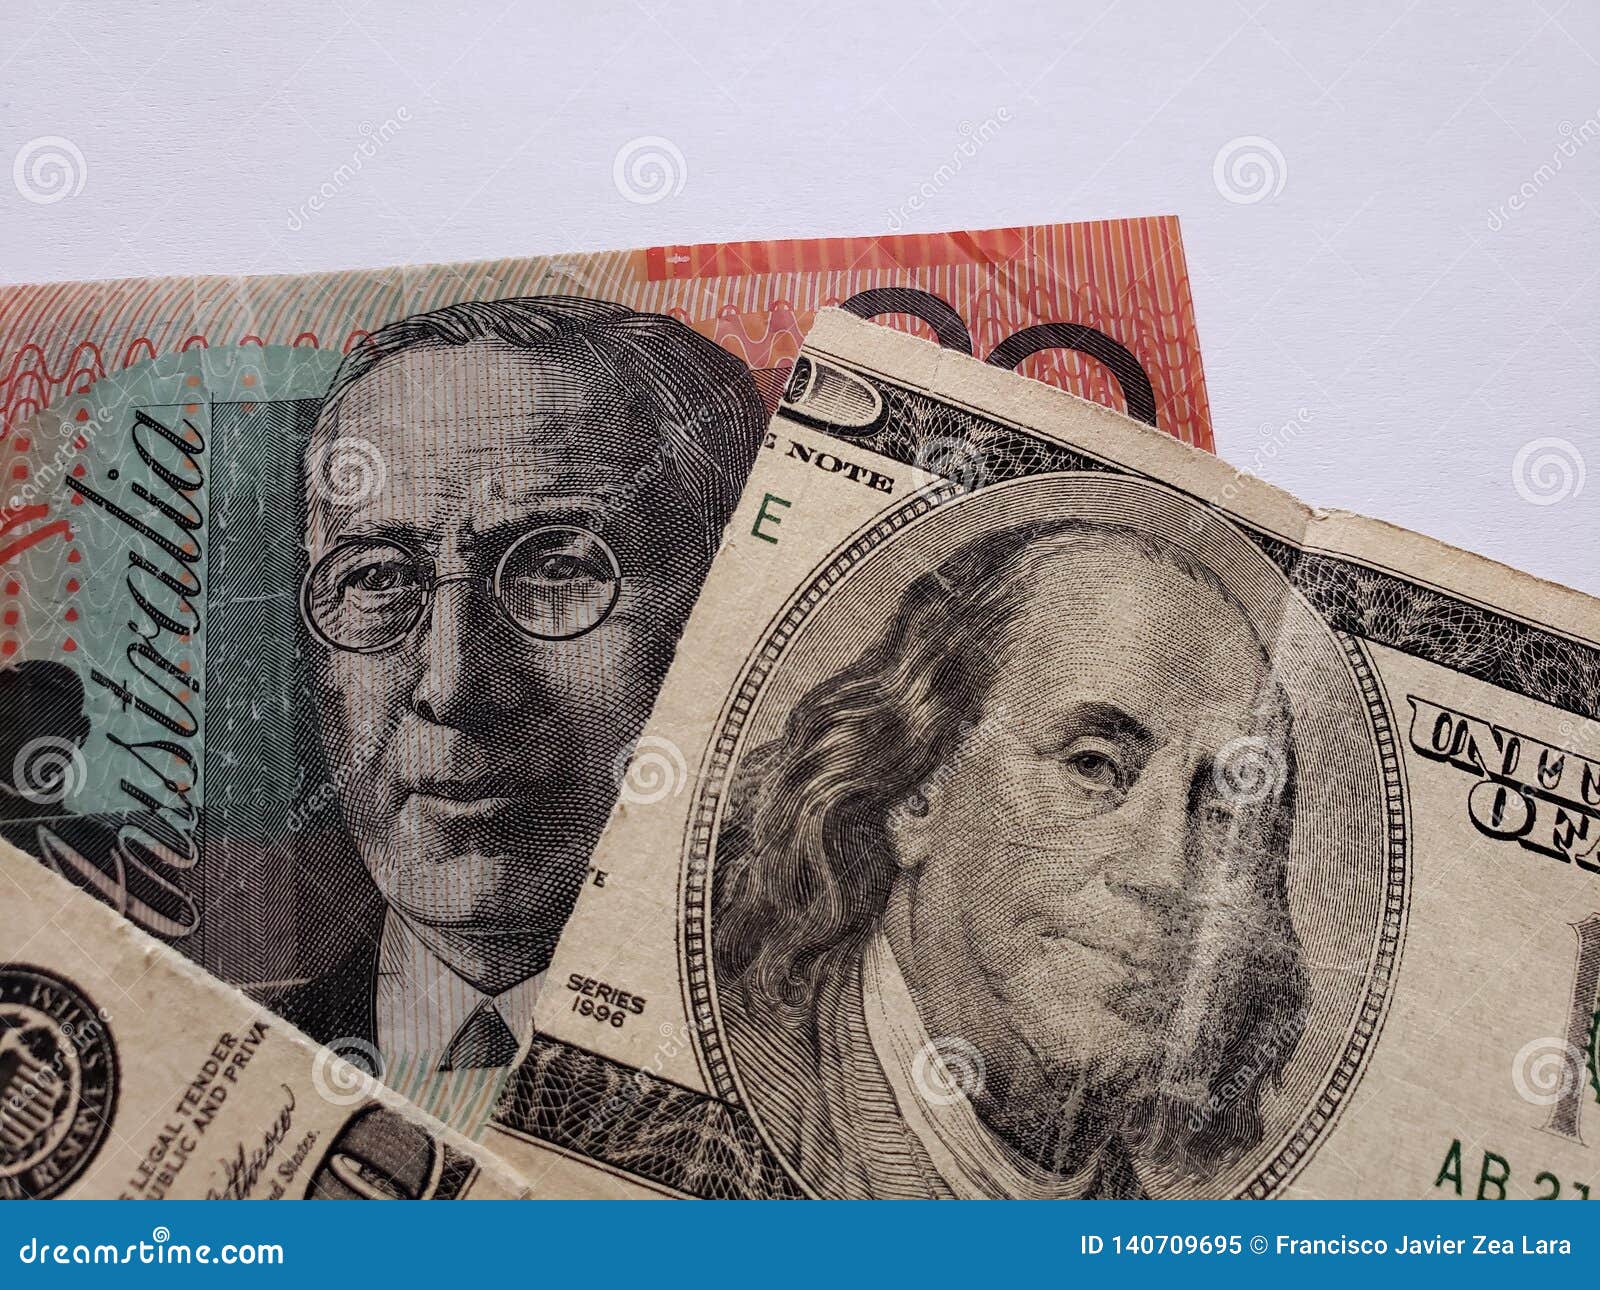 australian banknote of twenty dollars and broken american banknote of 100 dollars